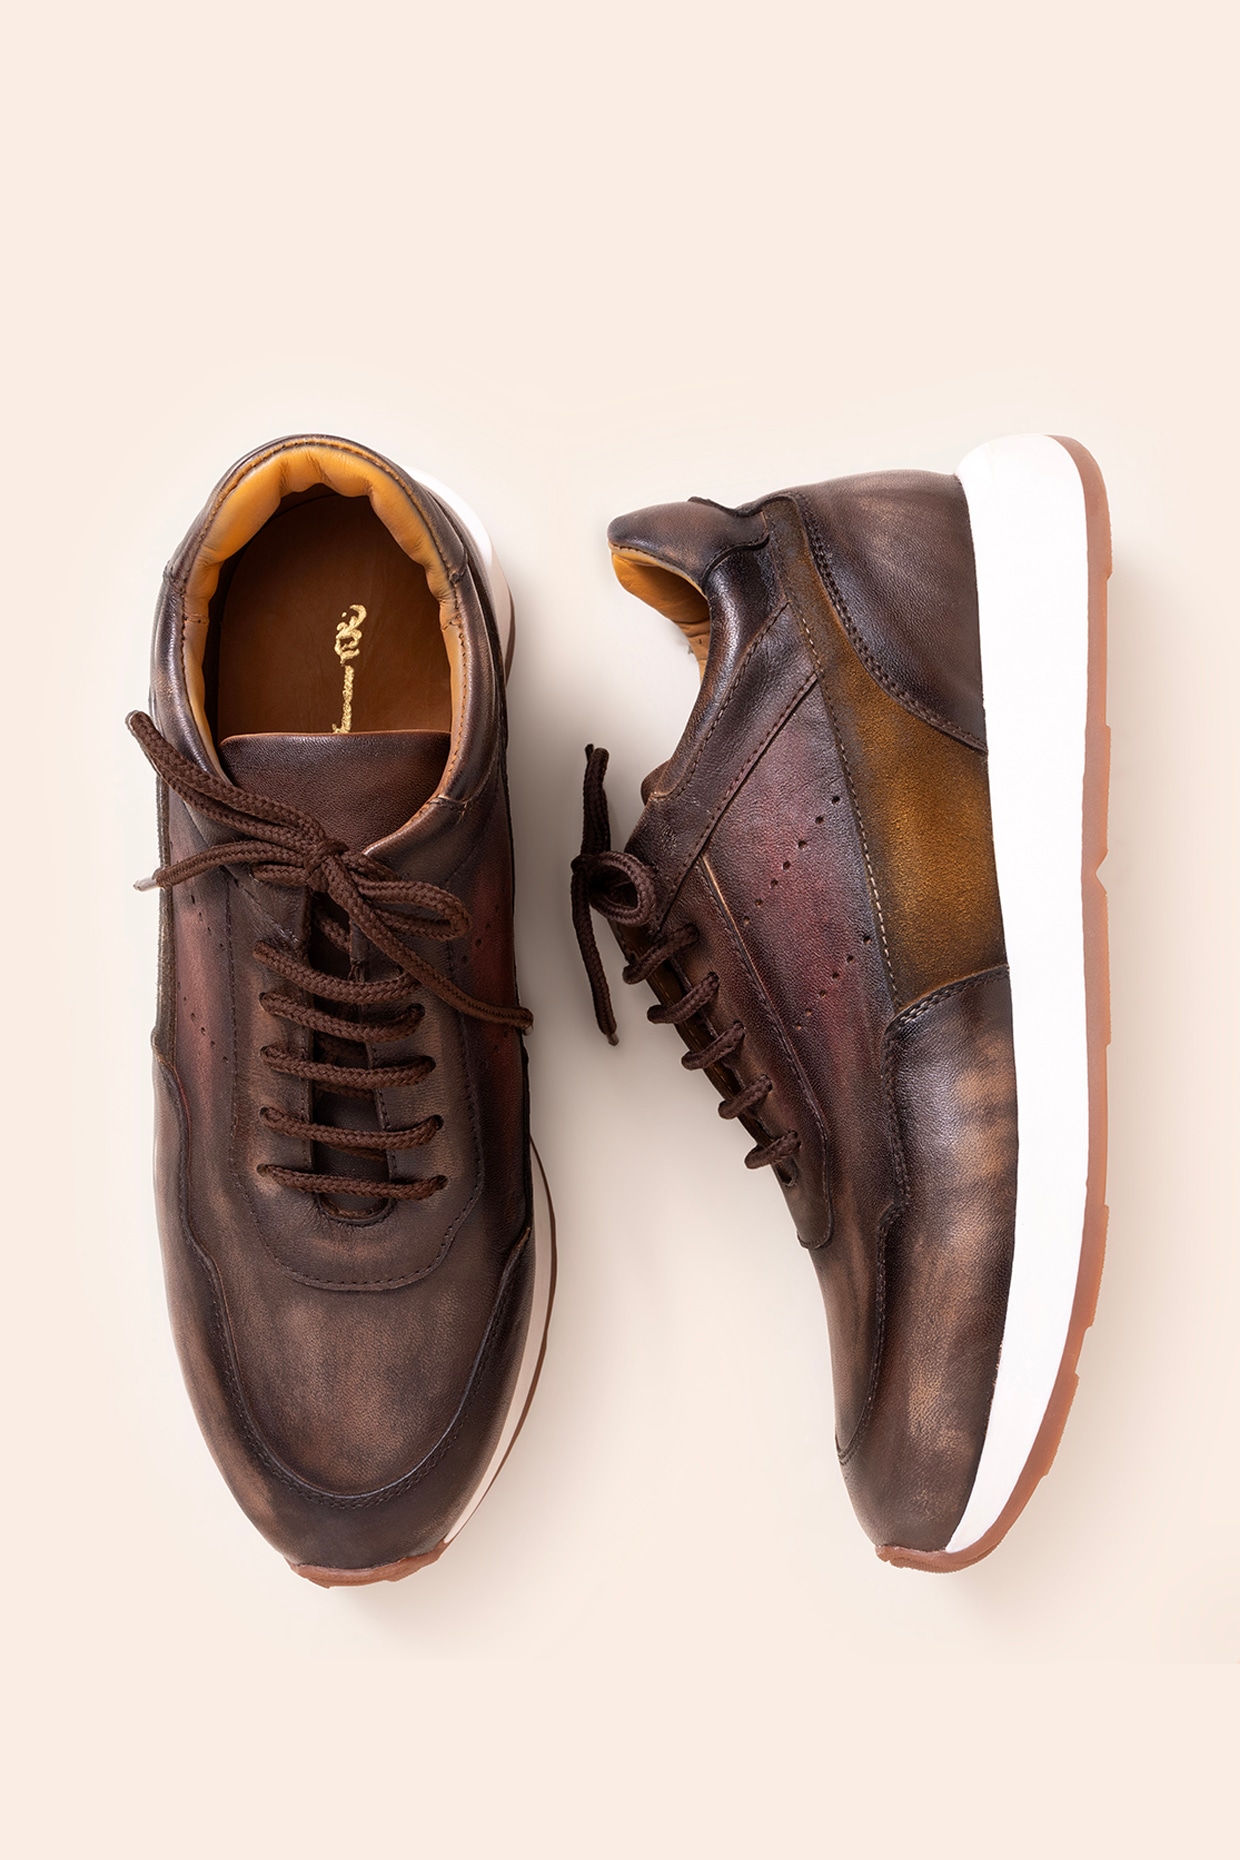 Joseph Abboud Cap Toe Leather Sneakers Shoes Lace-Up Carmel Tan Brown Men's  11 M | eBay